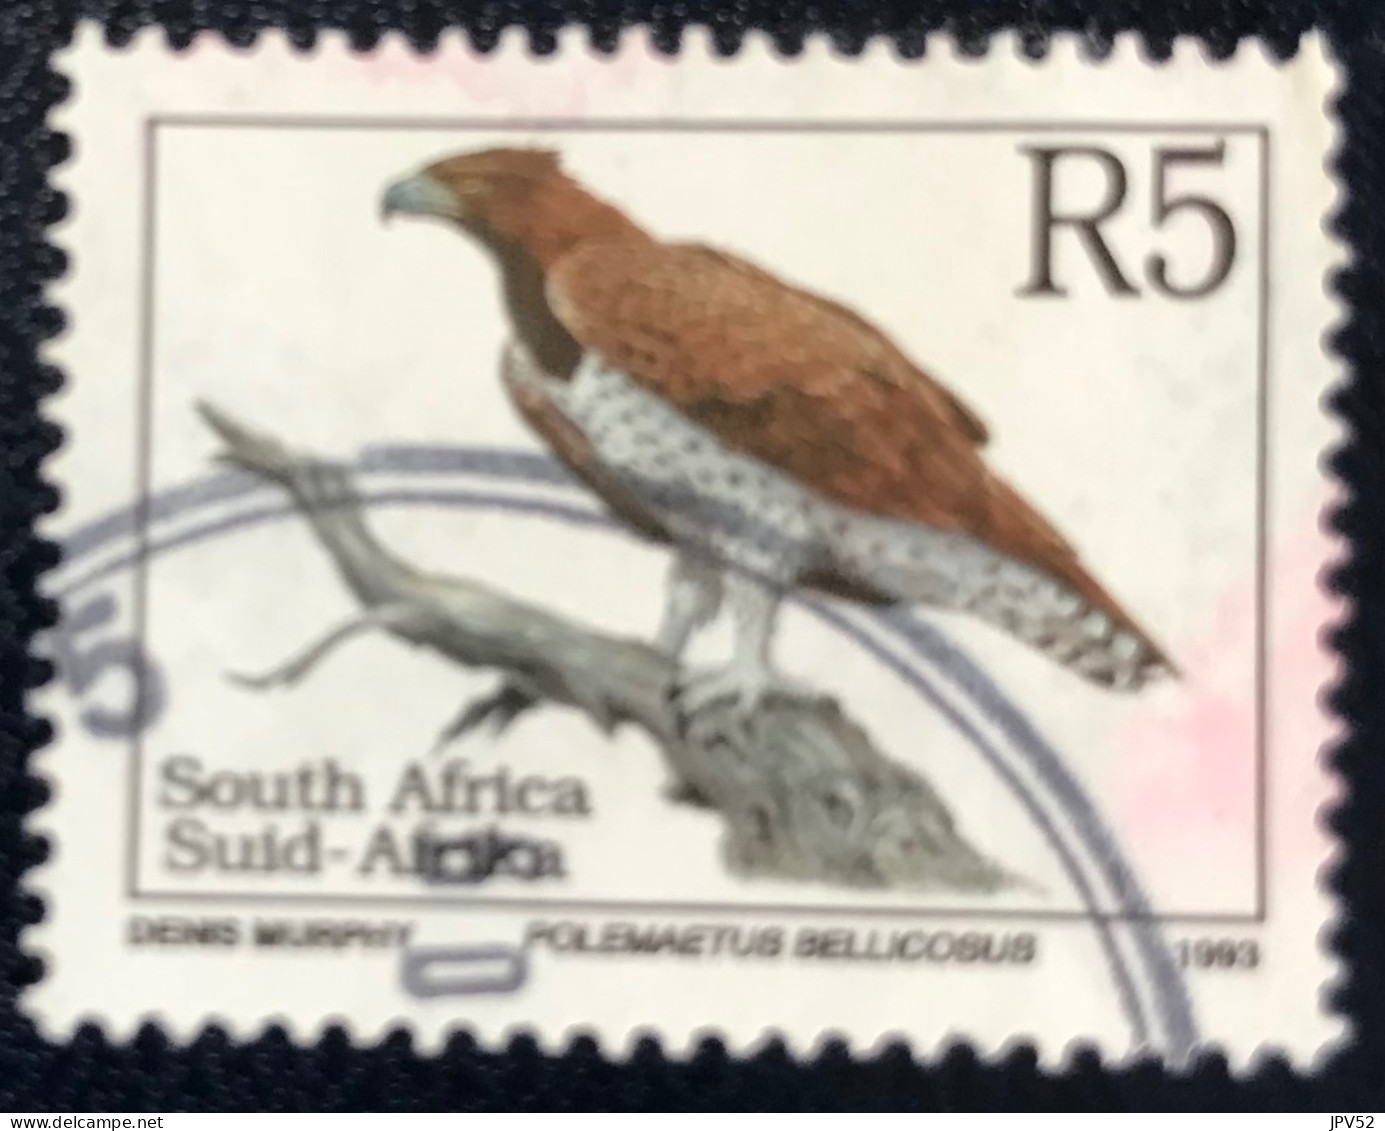 RSA - South Africa - Suid-Afrika  - C18/6 - 1993 - (°)used - Michel 906 - Bedreigde Dieren - Usati